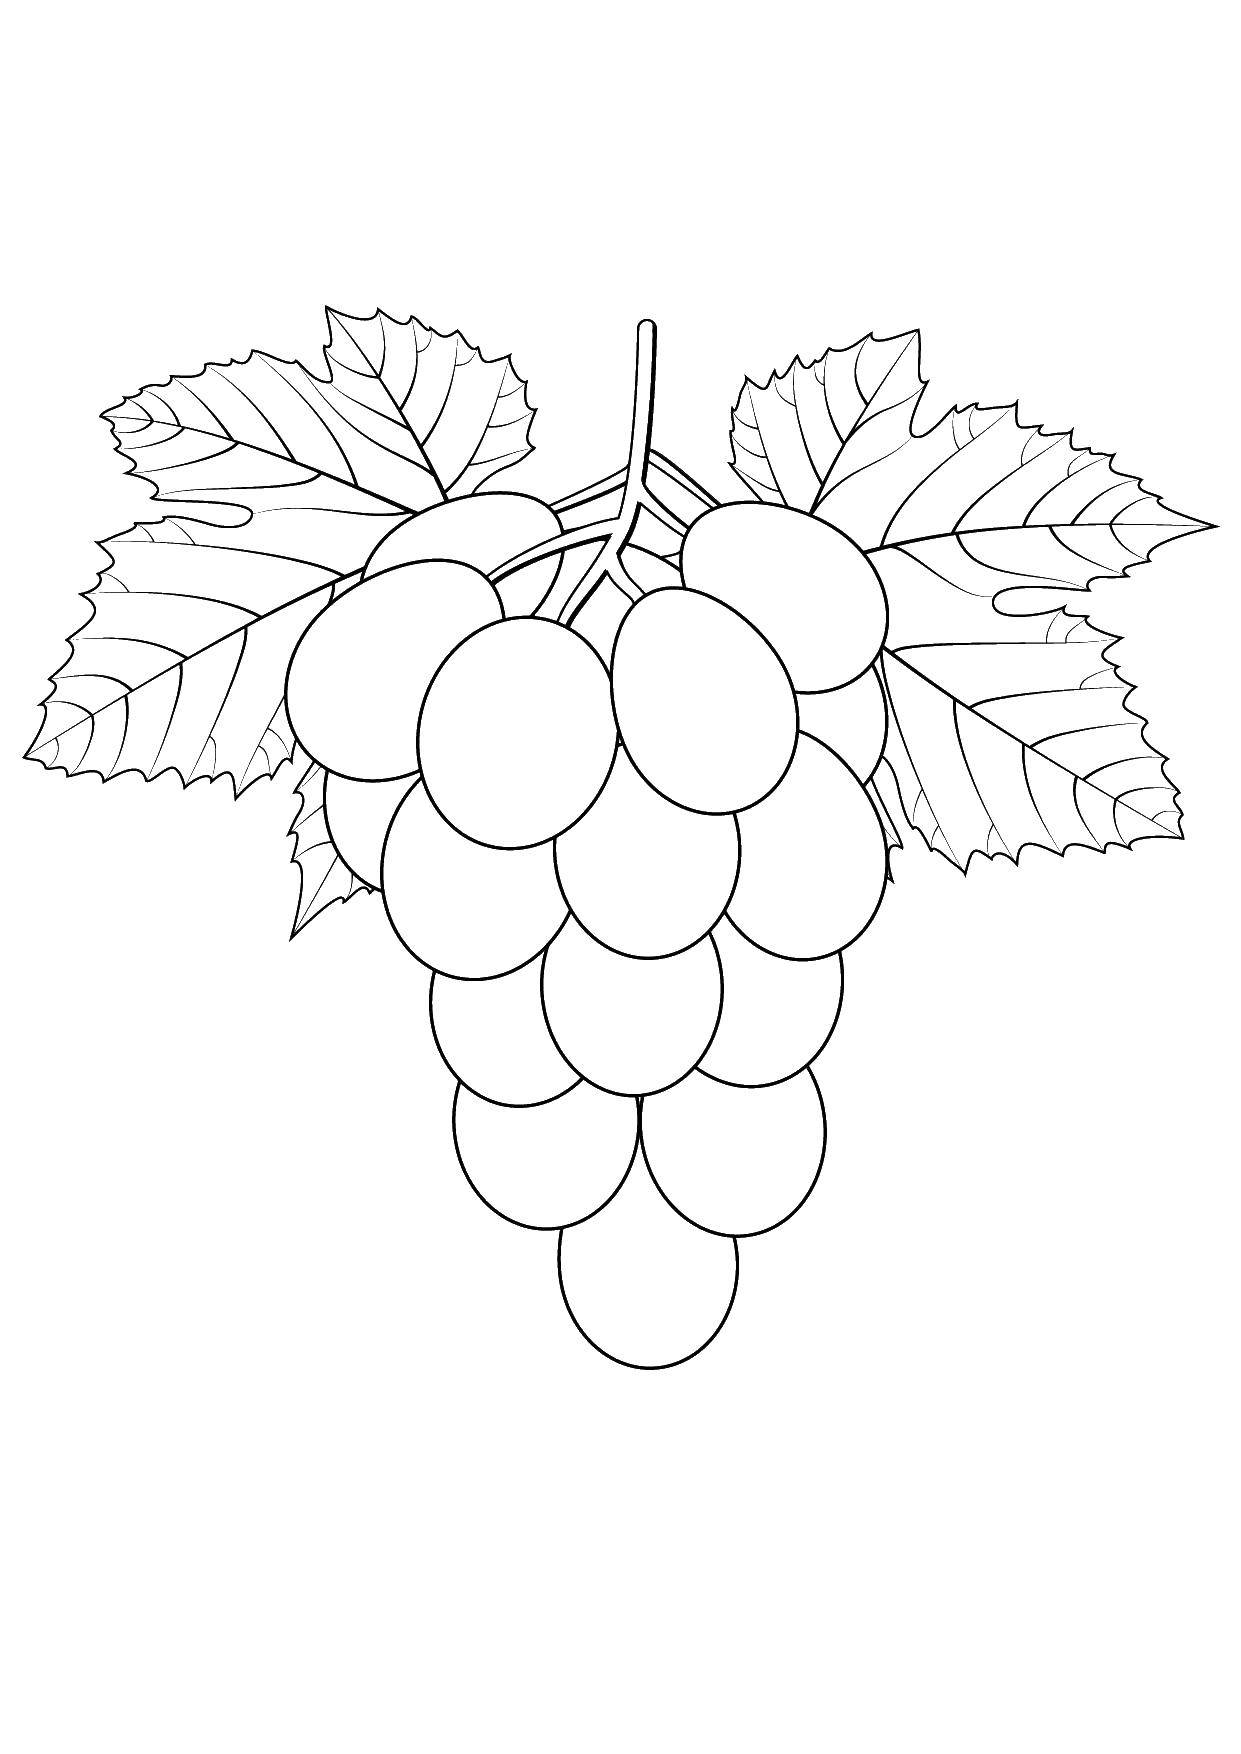 Раскраски с изображением фруктов и винограда для детей - бесплатно скачать и распечатать (виноград)